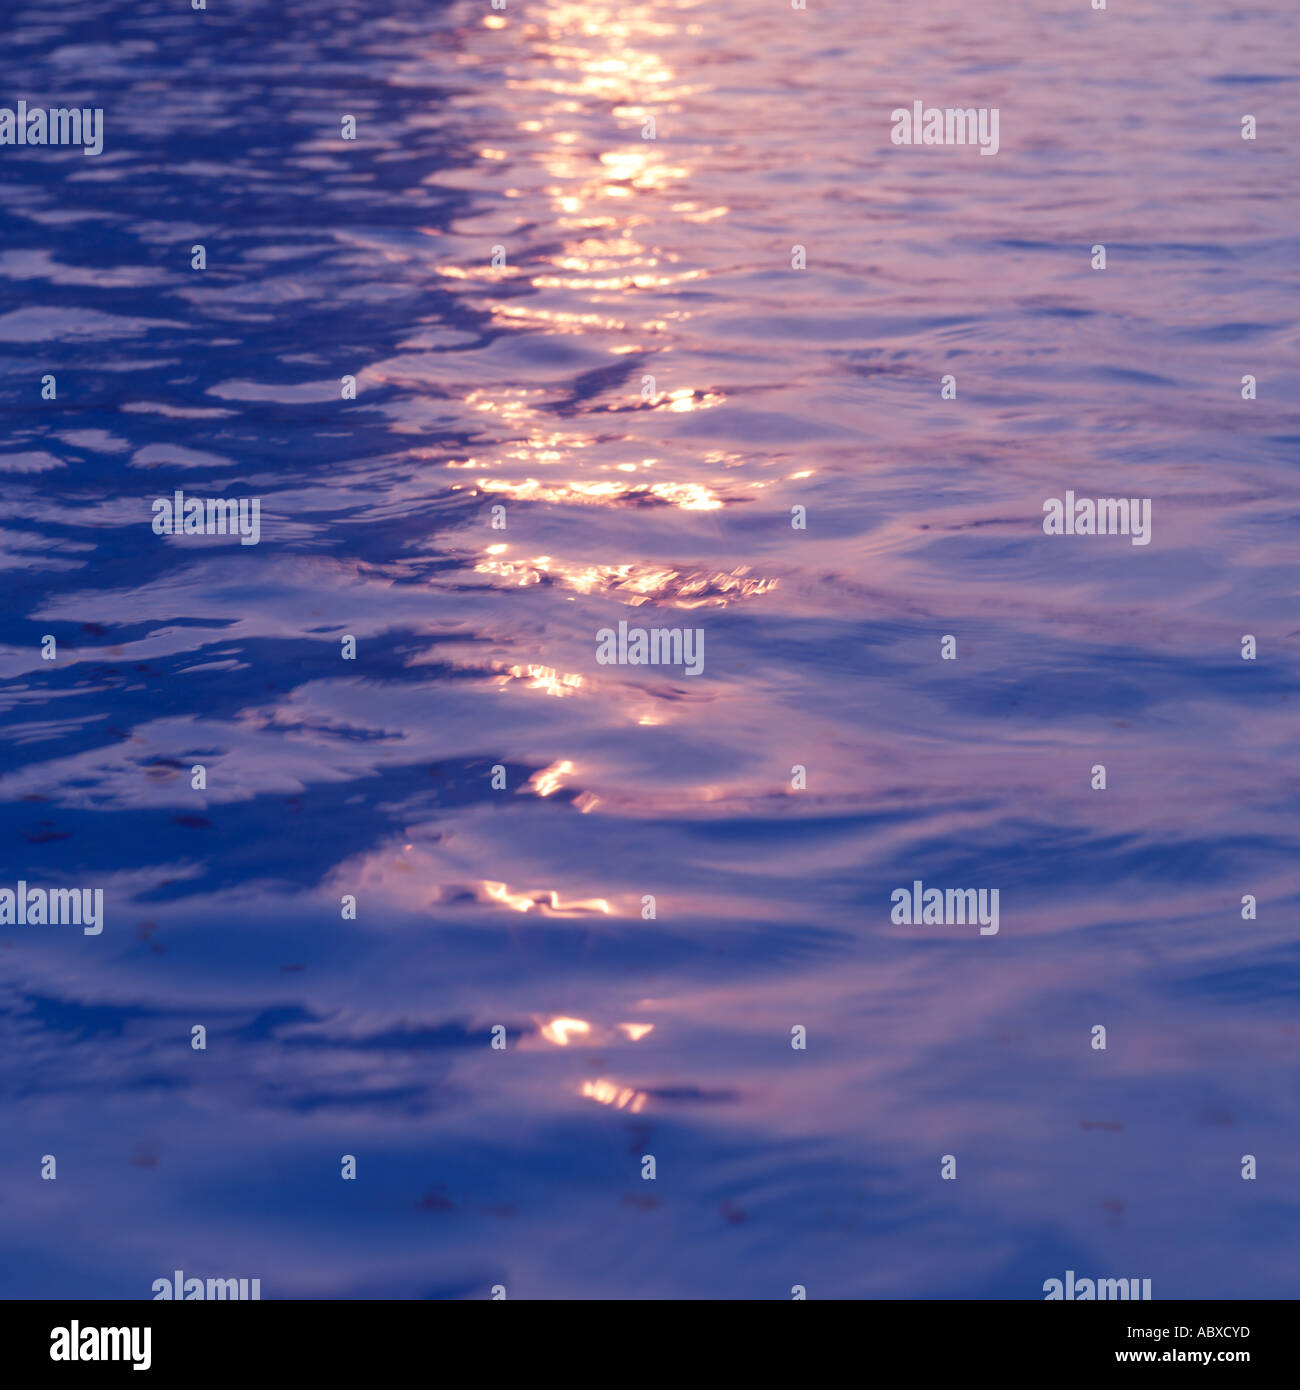 La luce del sole riflessa sulla superficie dell'acqua Foto Stock